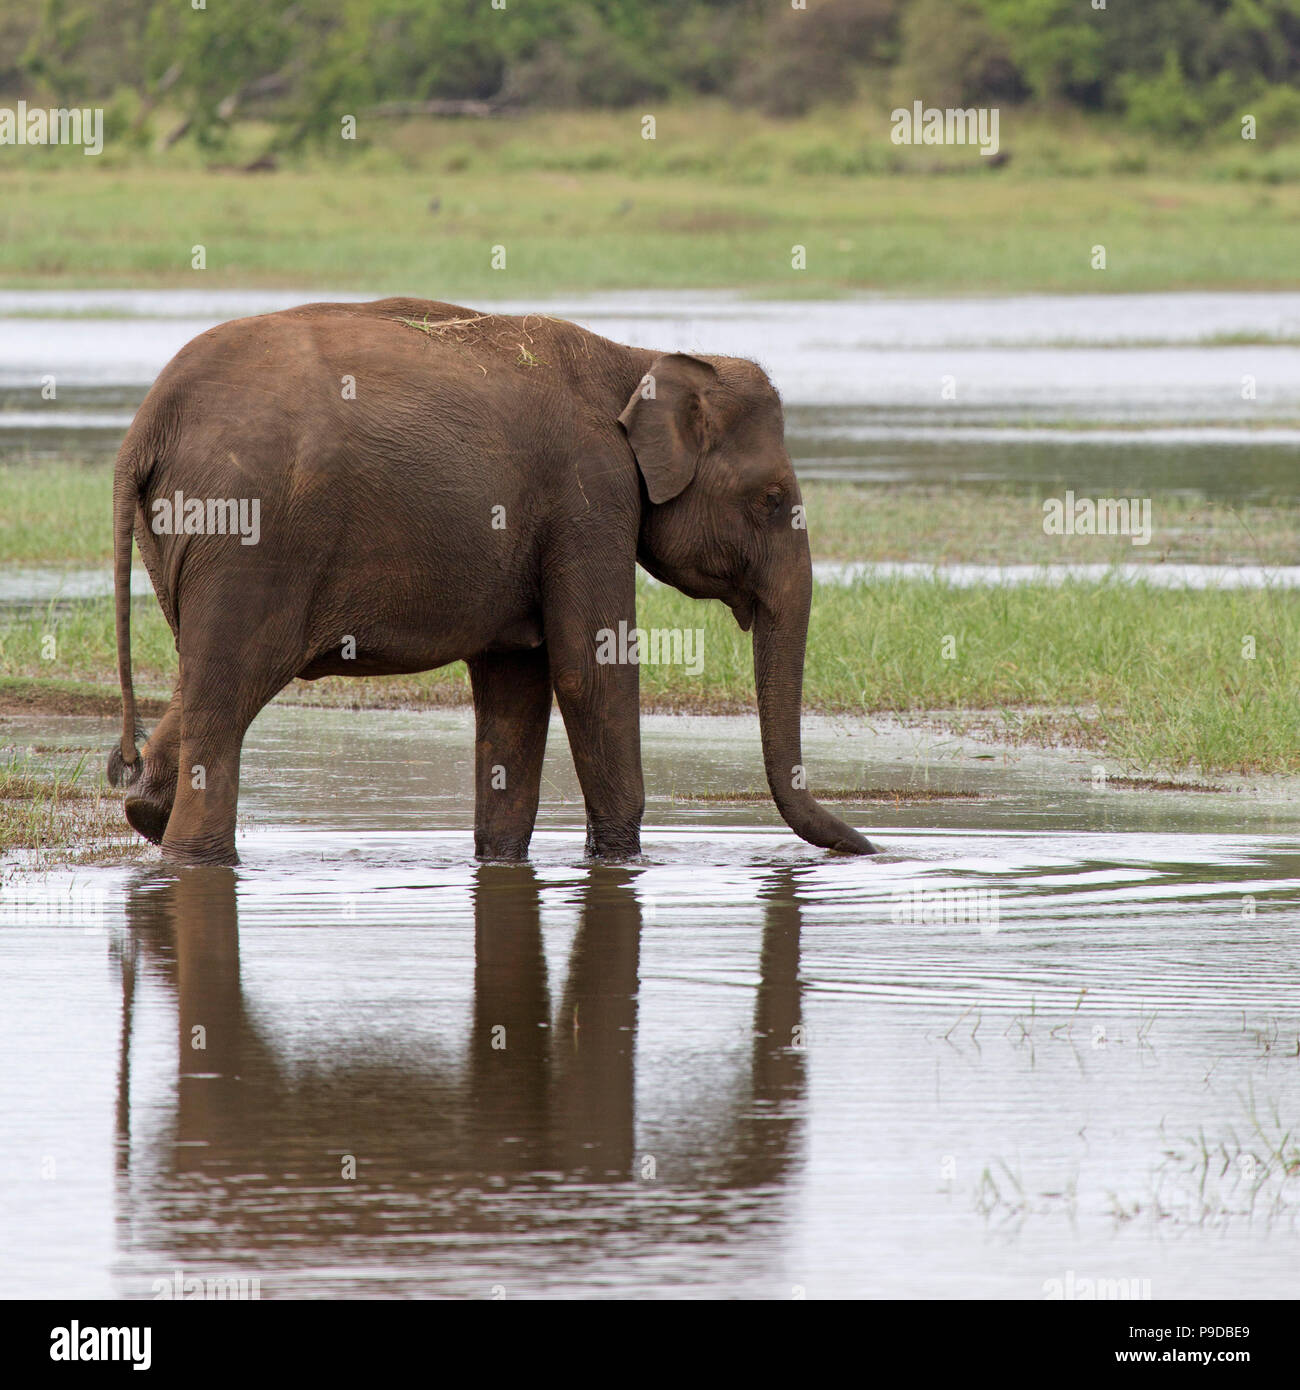 L'éléphant dans le Parc National Minneriya au réservoir au Sri Lanka. Éléphant (Elephas maximus) sont réputés pour l'regroupées autour de reser Banque D'Images